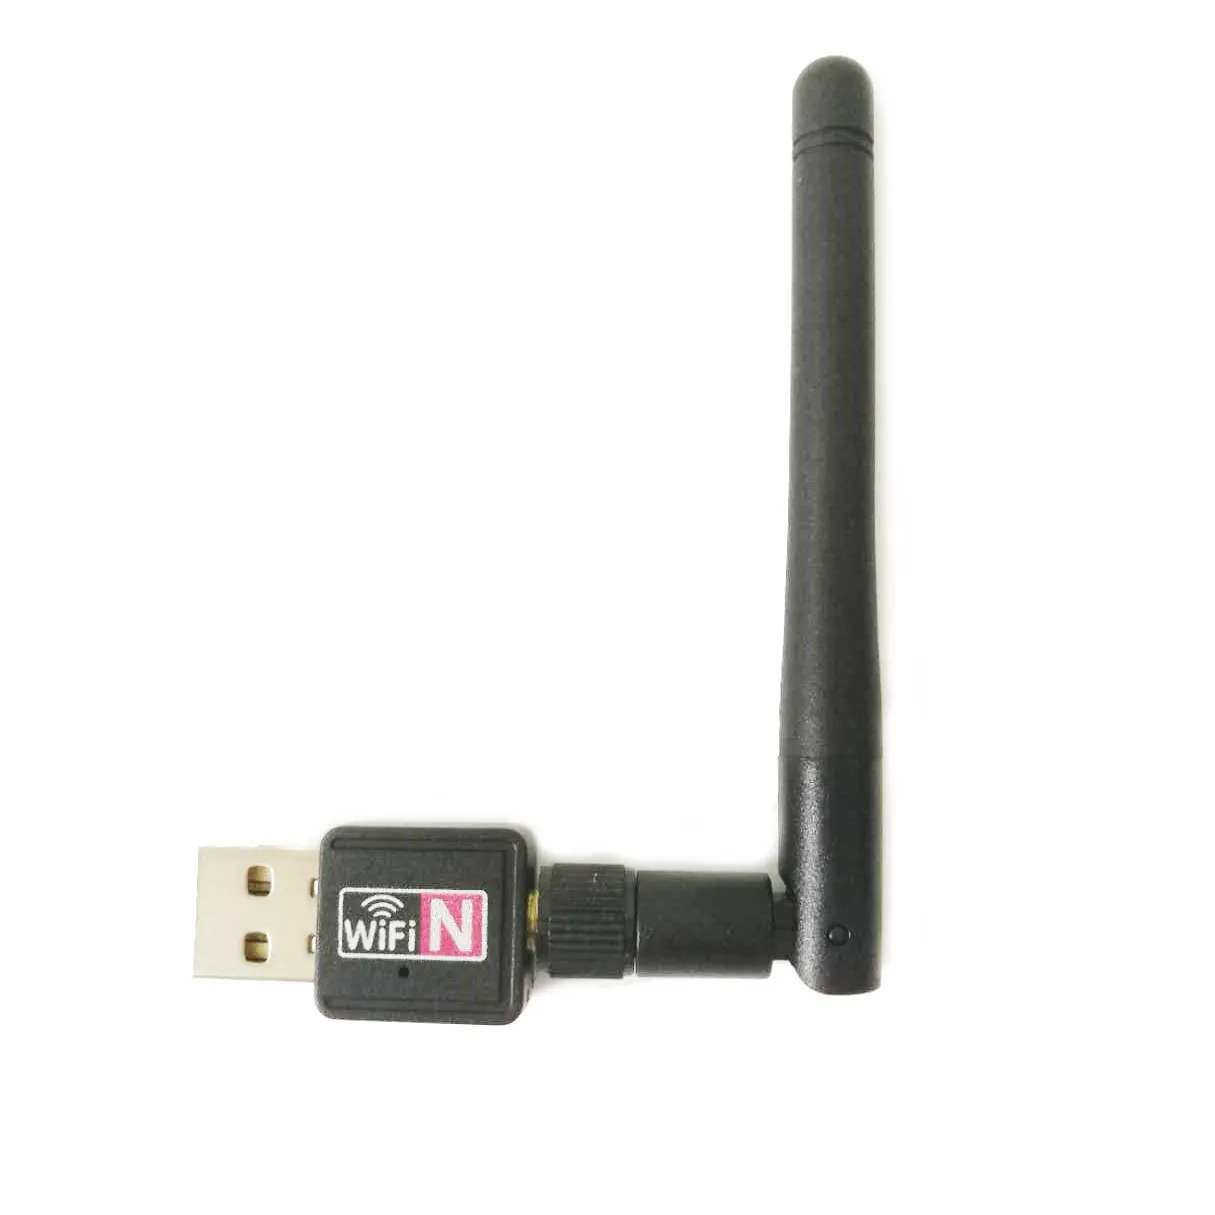 Adaptor Nirkabel USB Mini, Adaptor Nirkabel USB Mini 150Mbps Penerima WIFI 802.IIN dengan Antena USB 2.0 Penerima WiFi Kartu Jaringan